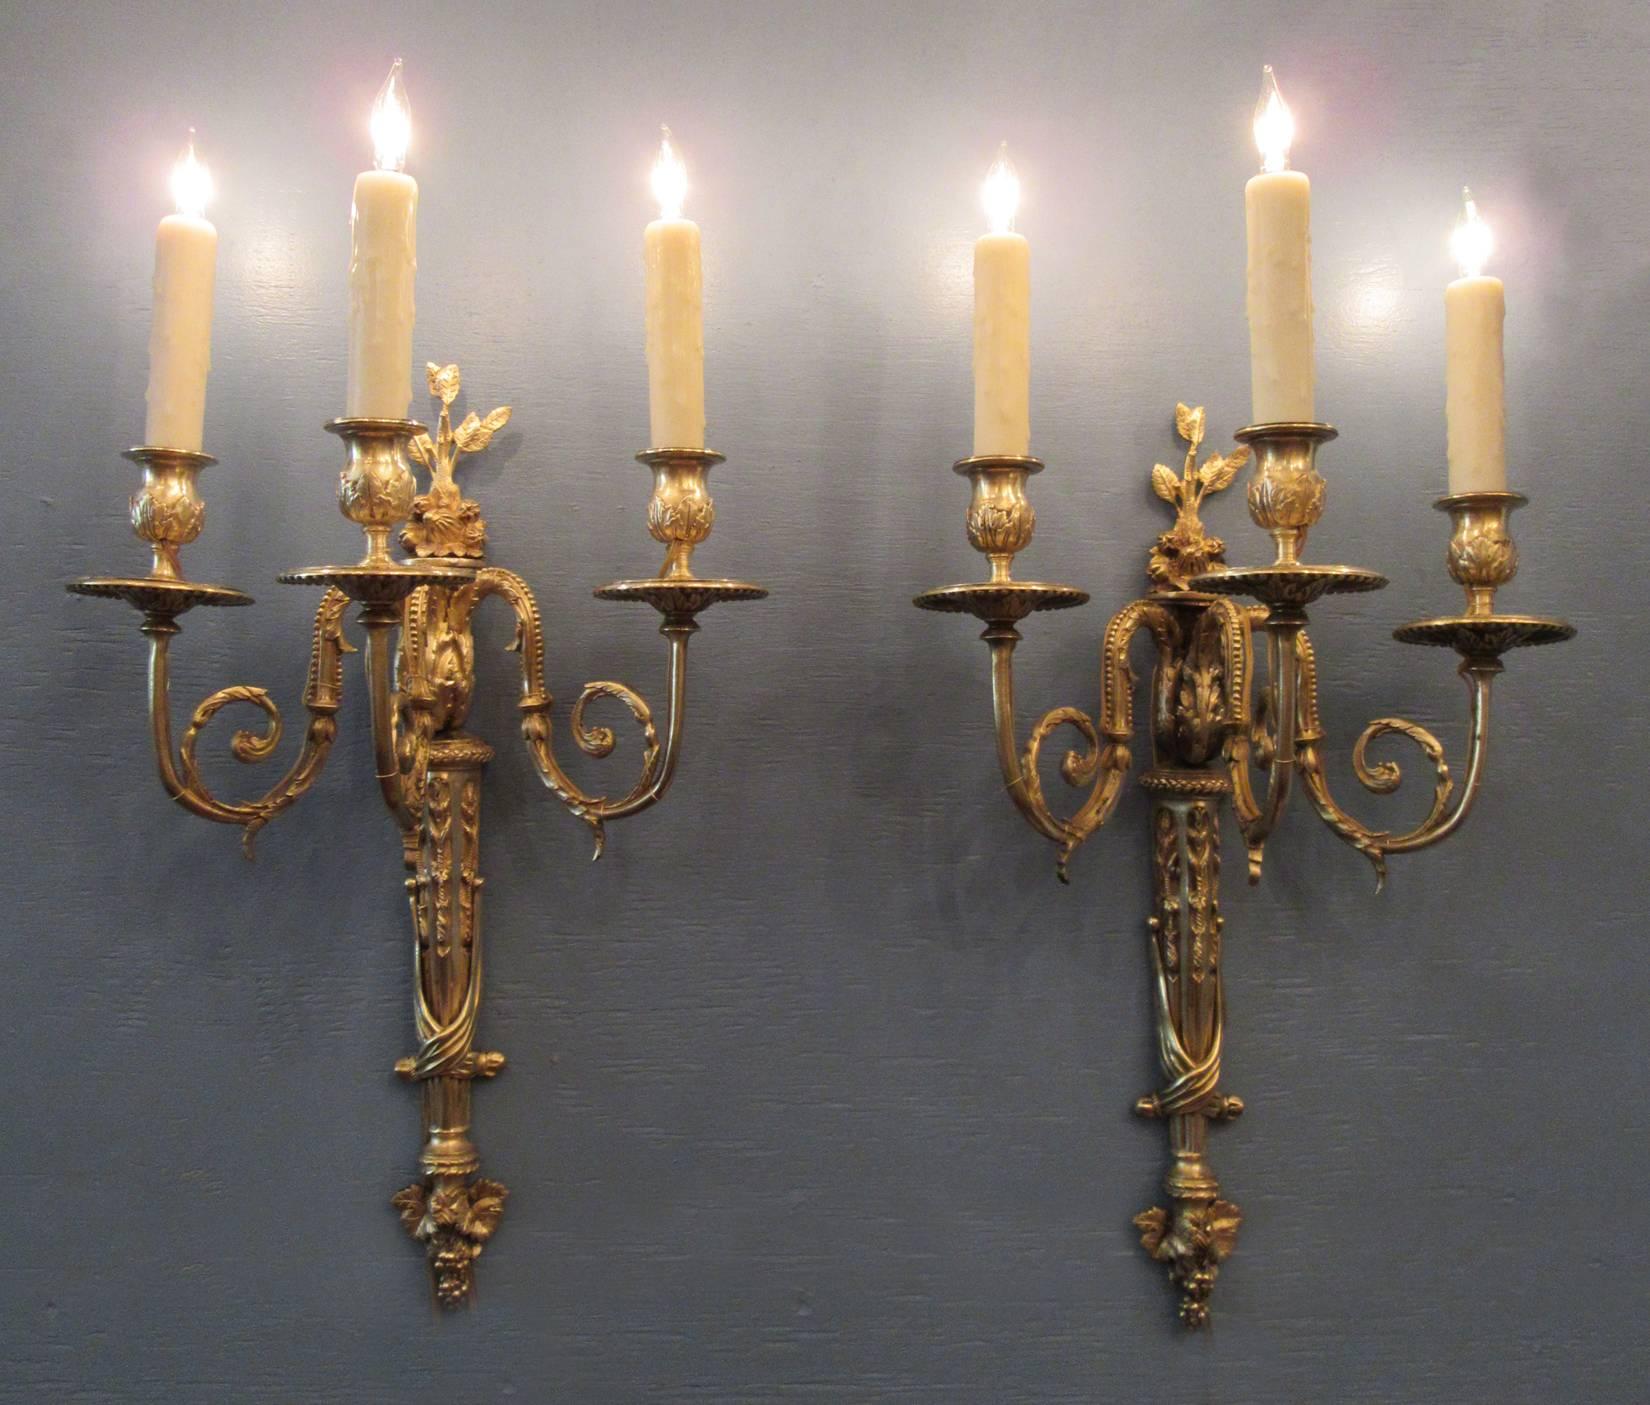 Ein Paar französischer Bronze-Doré-Leuchter aus dem frühen 19. Jahrhundert, um 1810, mit jeweils drei Kerzenarmen und Motiven aus Blättern, Trauben und Früchten. Das Paar war ursprünglich eine Kerze, wurde aber vor kurzem gereinigt und mit neuen